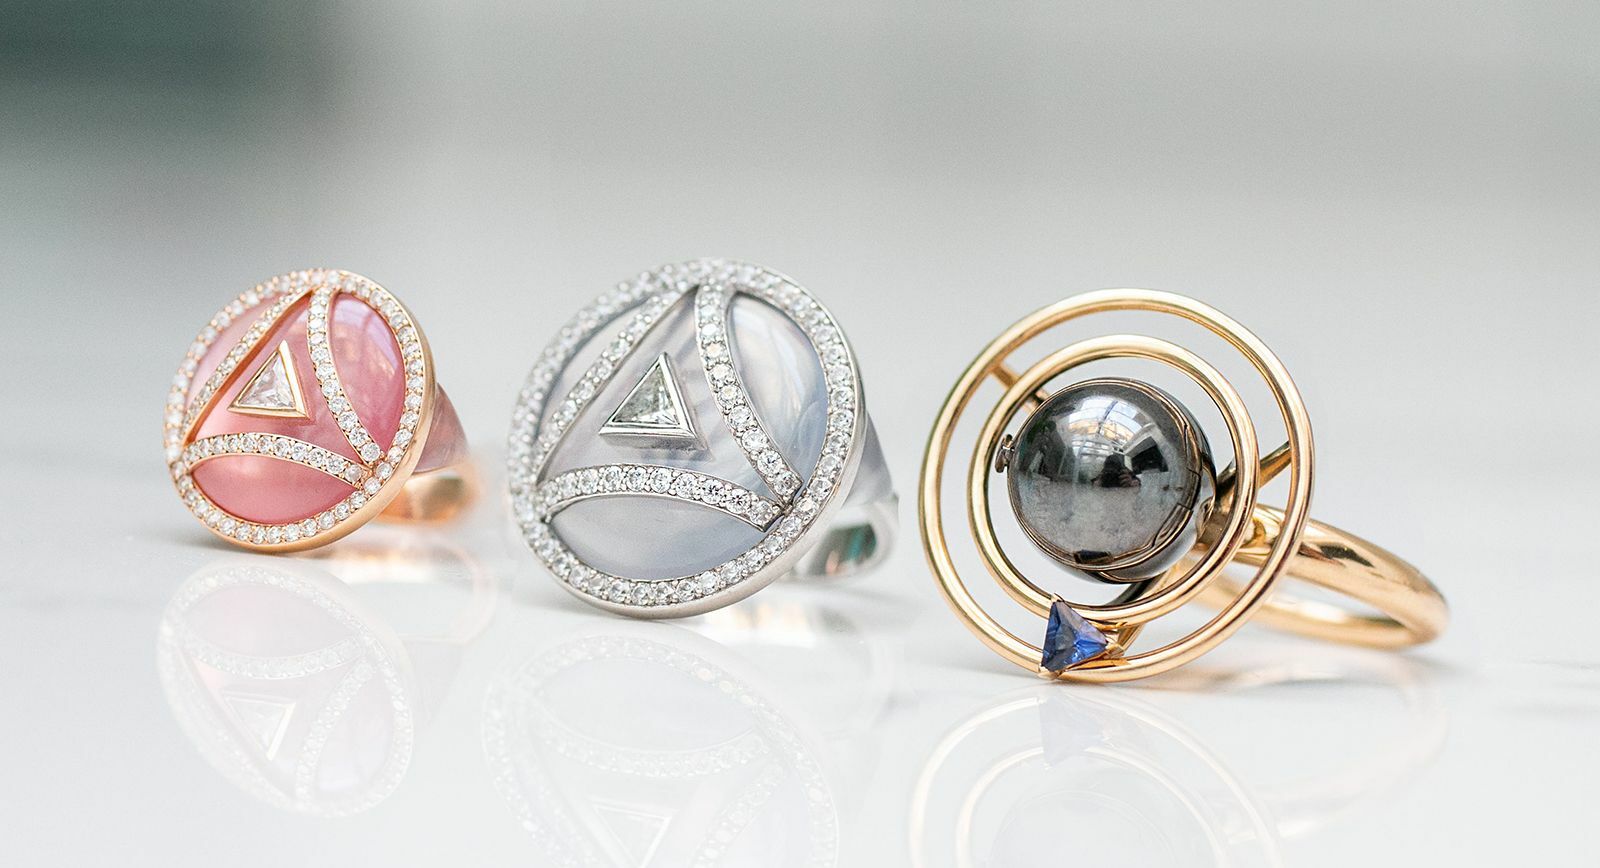 Maya Gemstones triangular gem cut rings